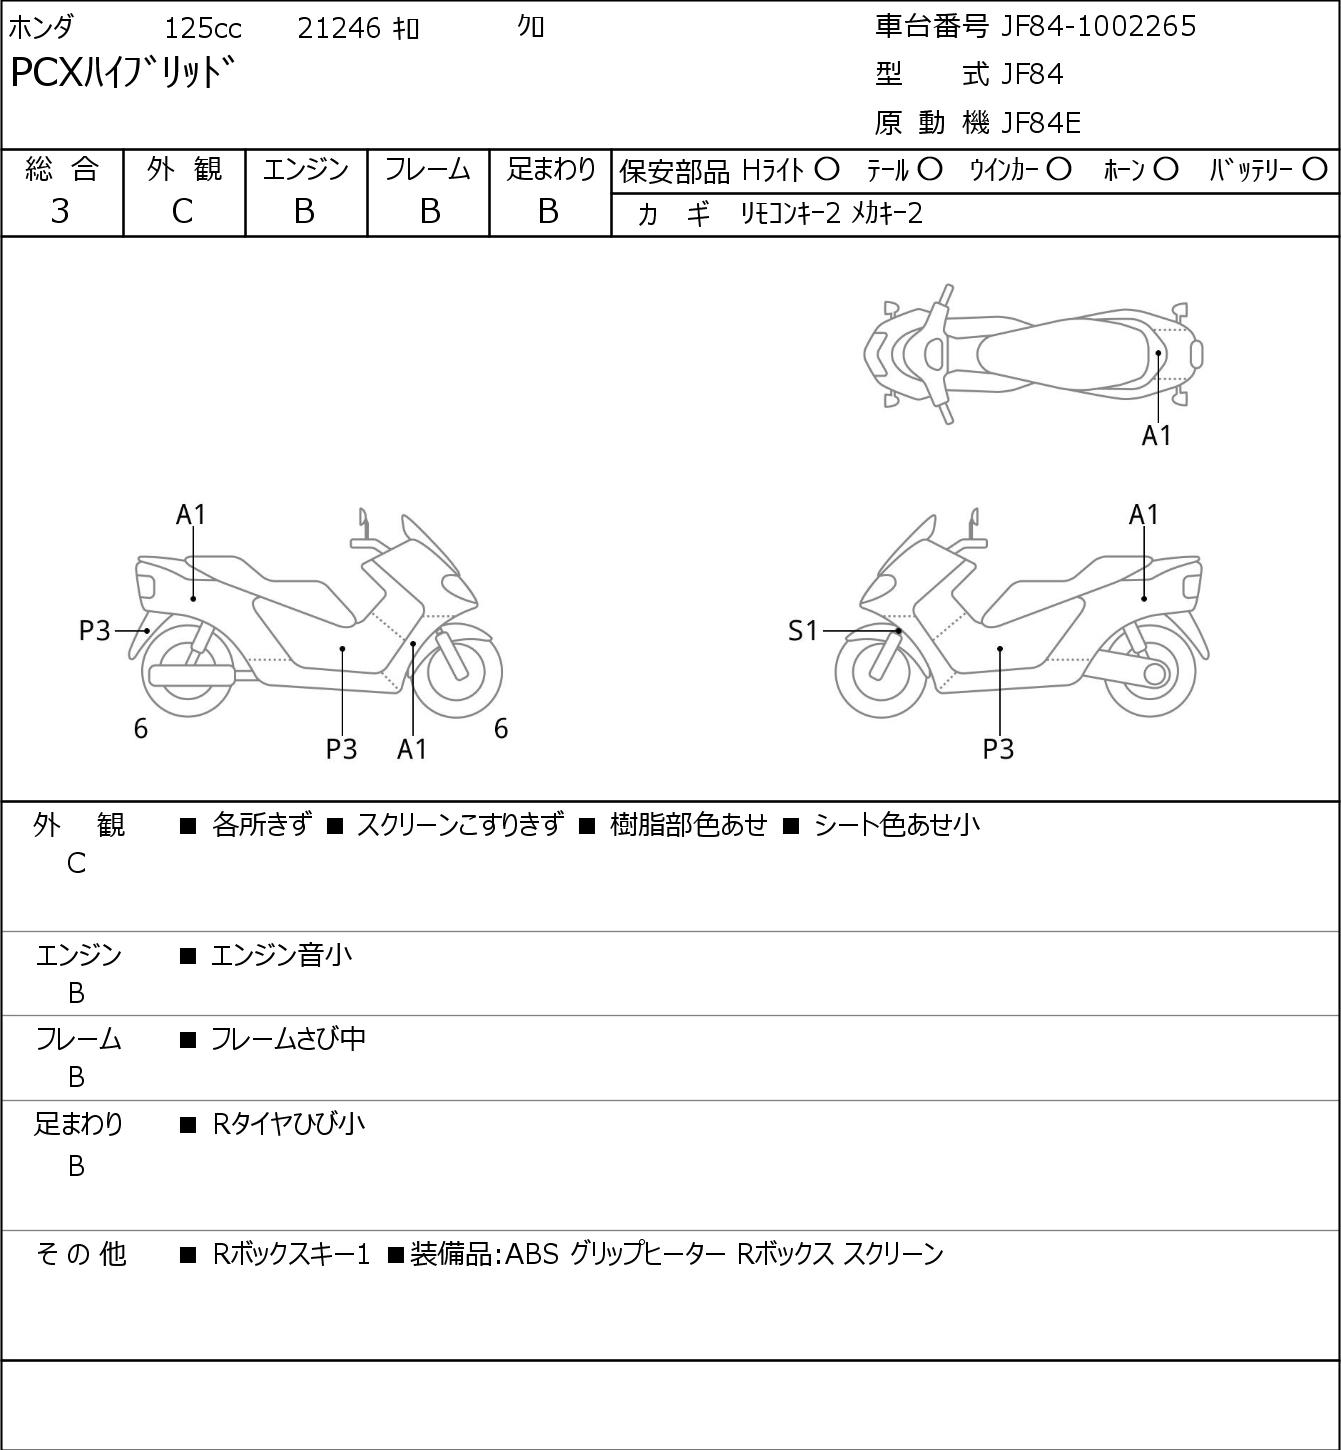 Honda PCX HYBRID JF84 г. 21246